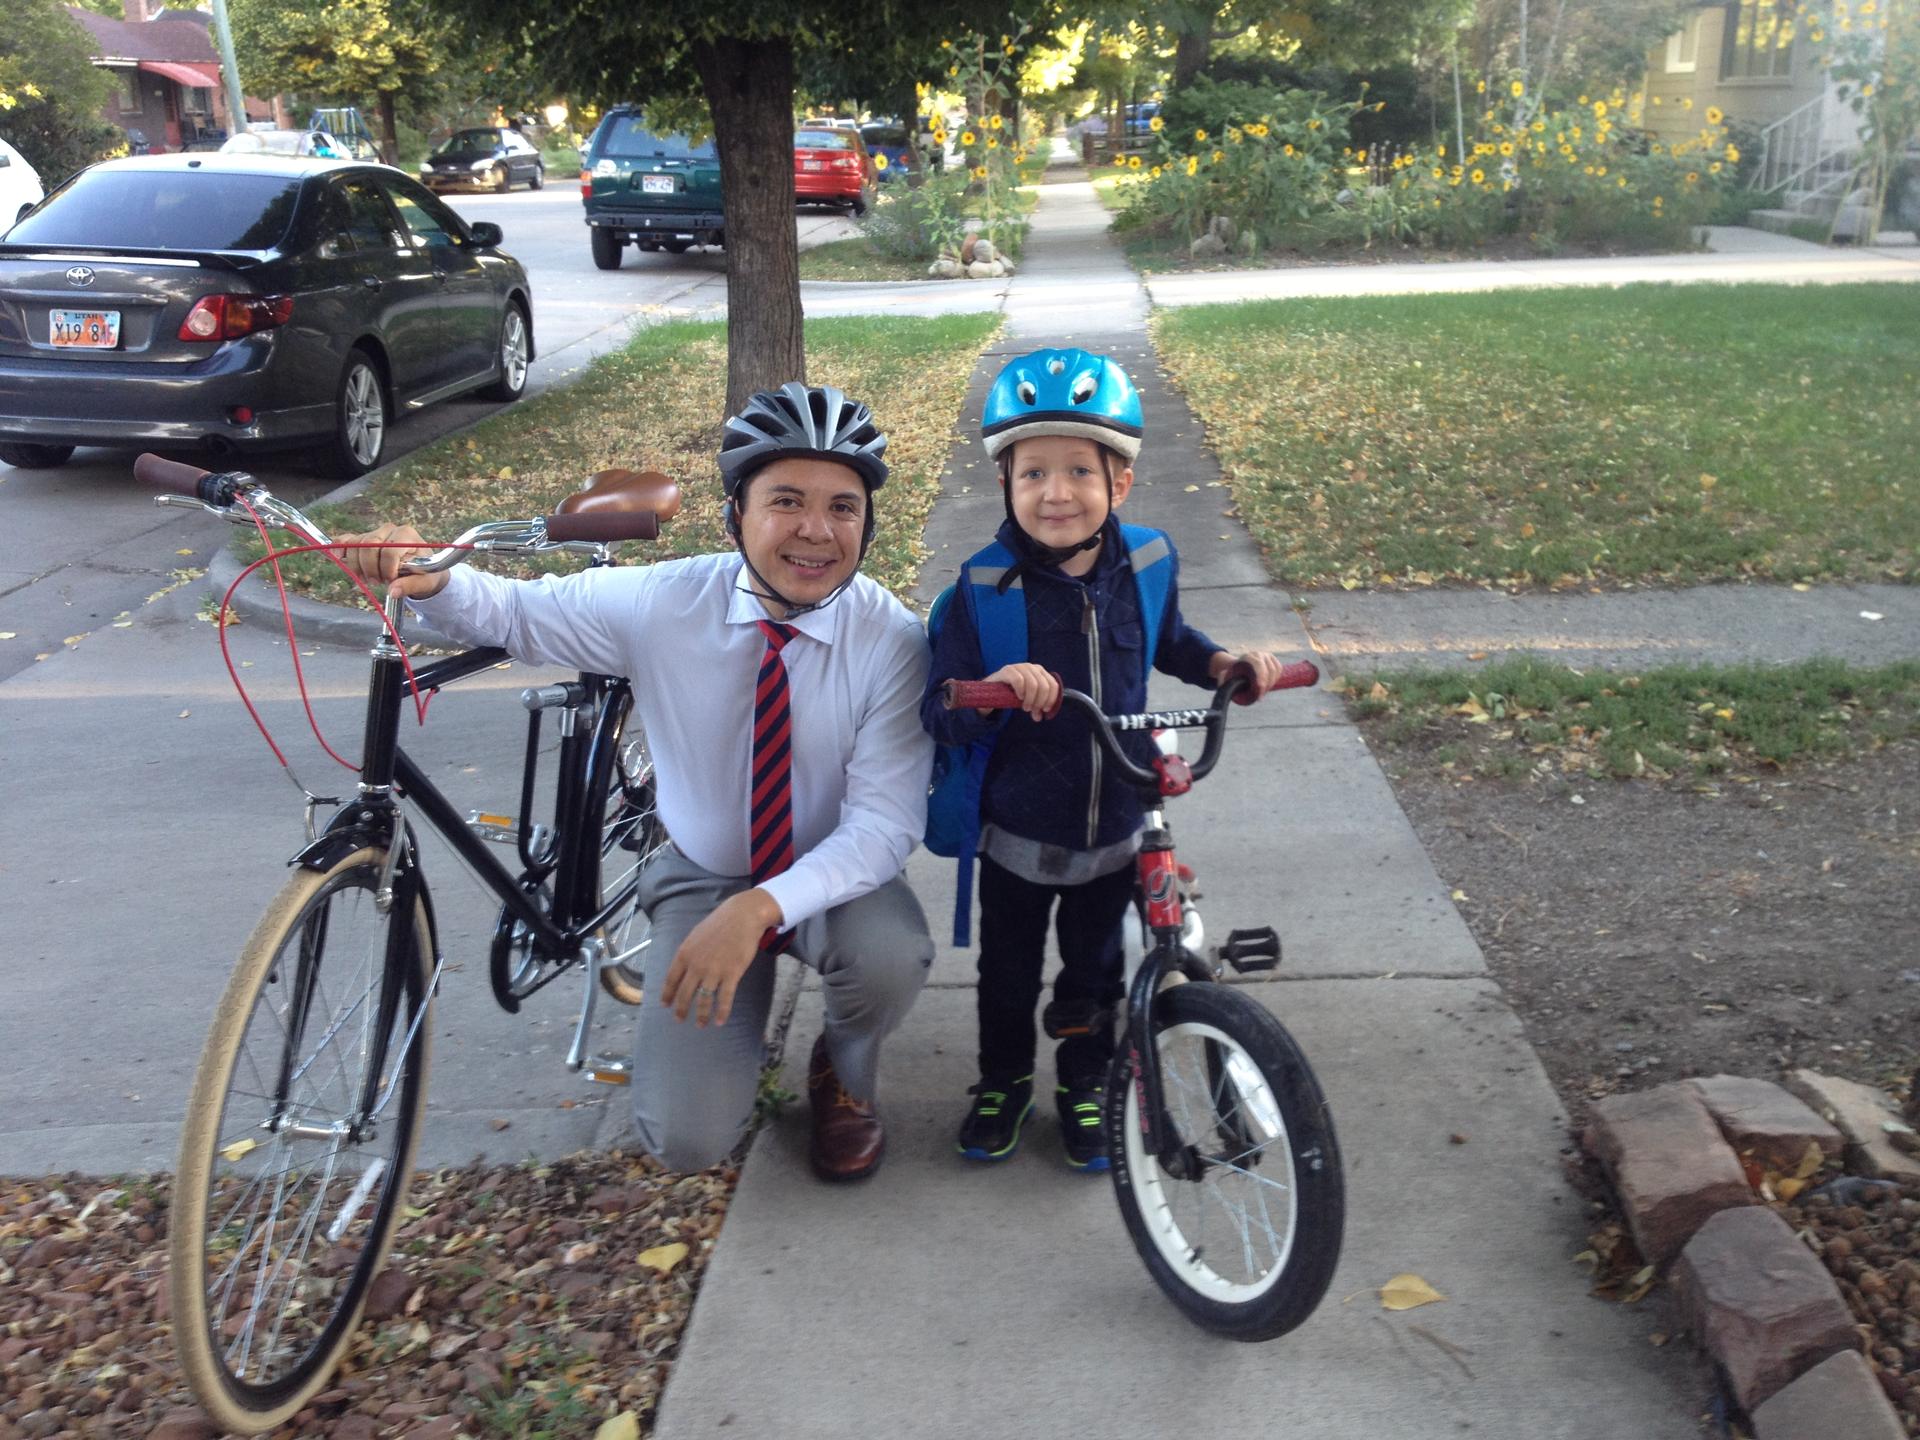 Man wearing helmet and tie kneels on sidewalk next to boy on bike, also wearing helmet